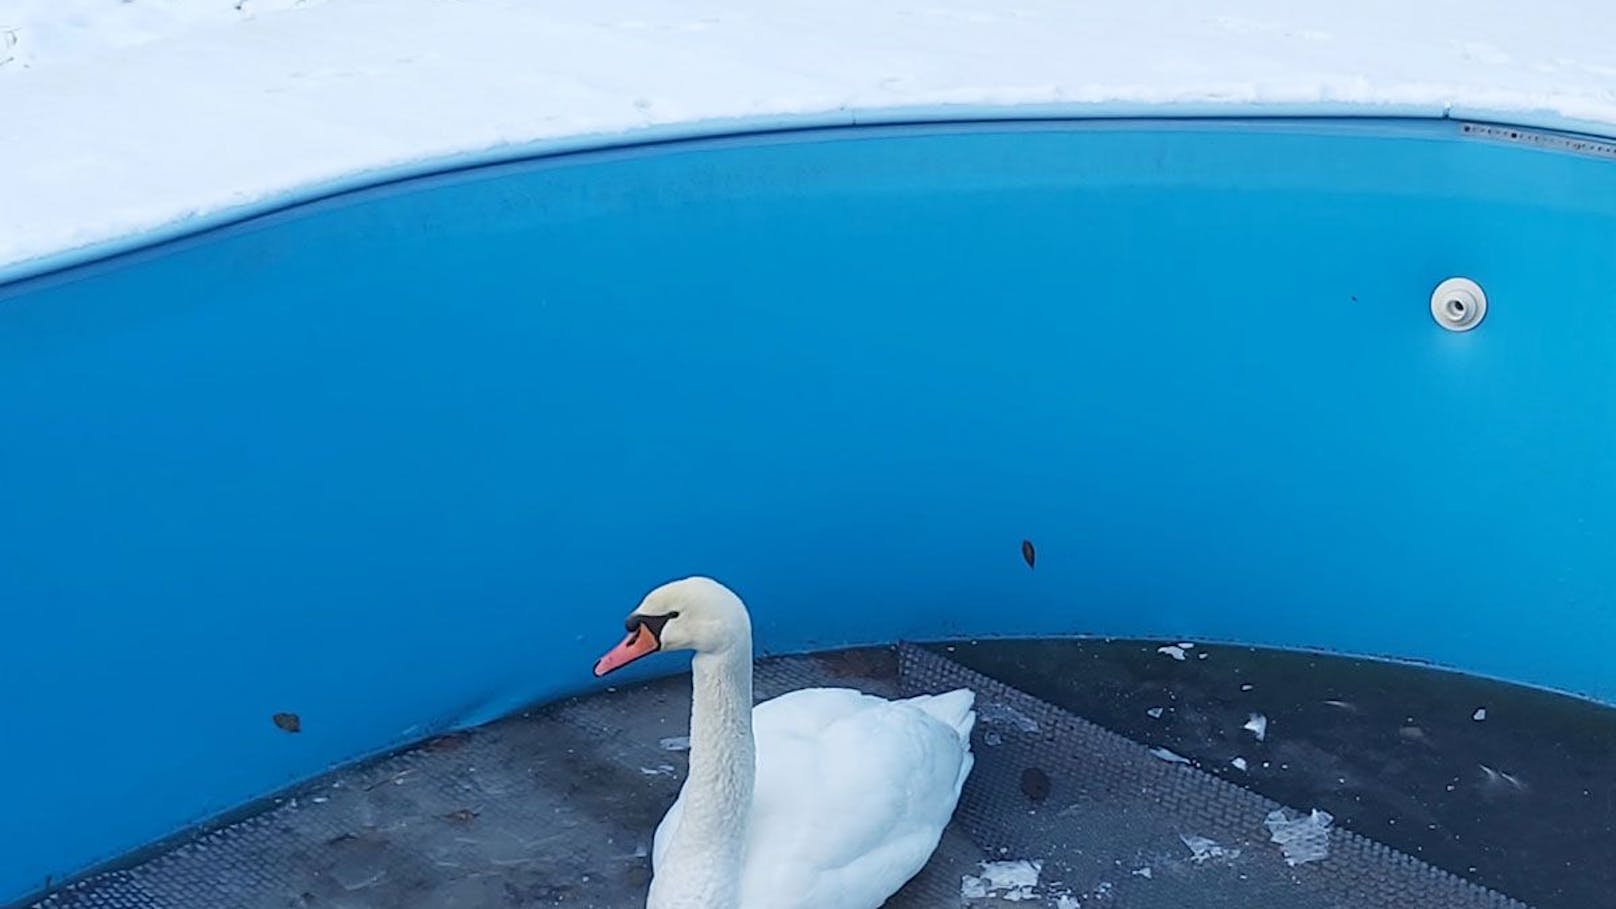 Der Wasservogel saß in dem leeren Becken fest.